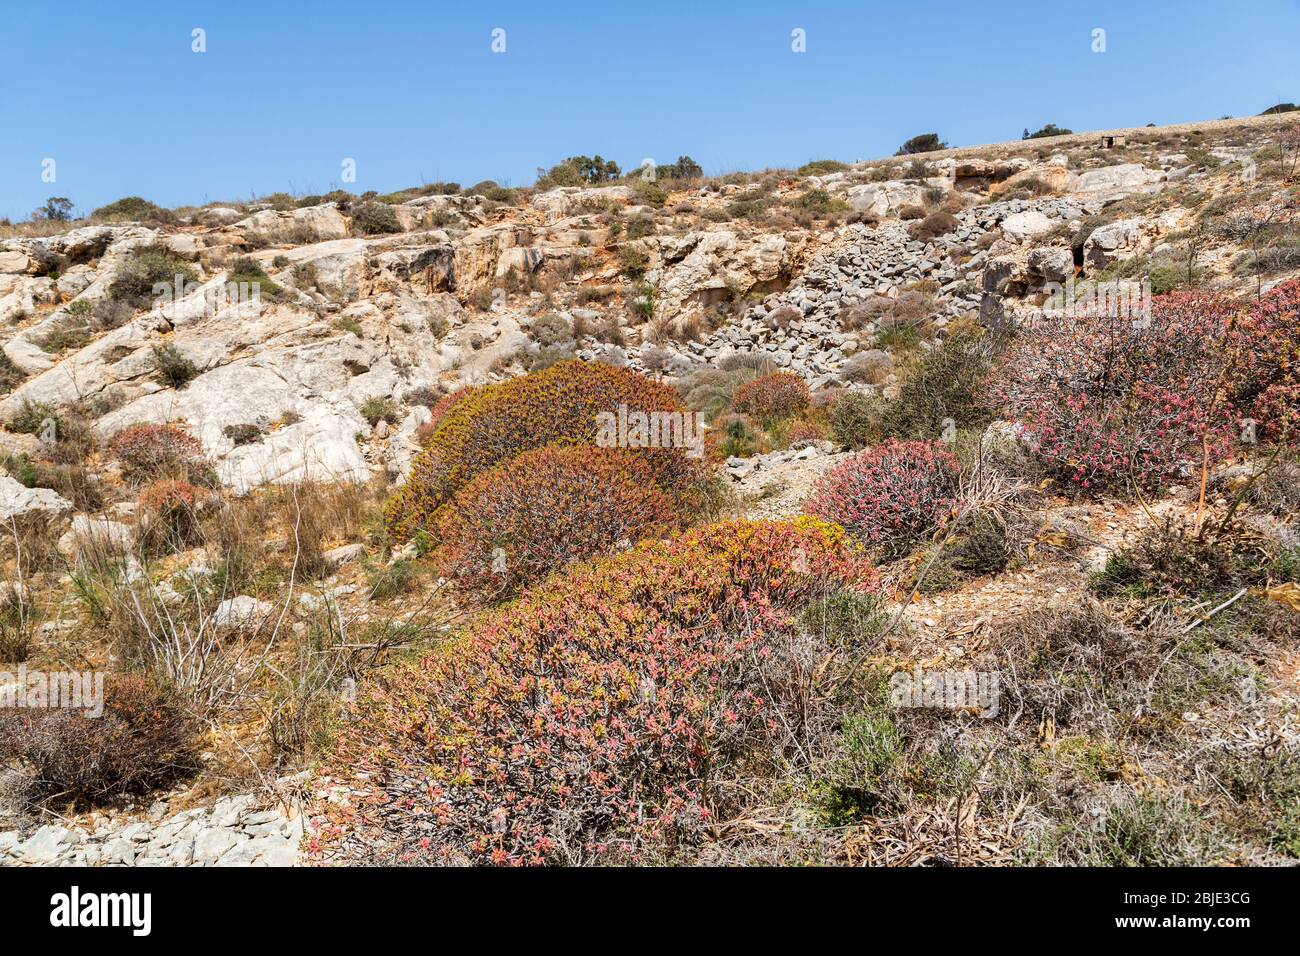 Coast region near Mnajdra temples showing terrain, Qrendi, Malta Stock Photo